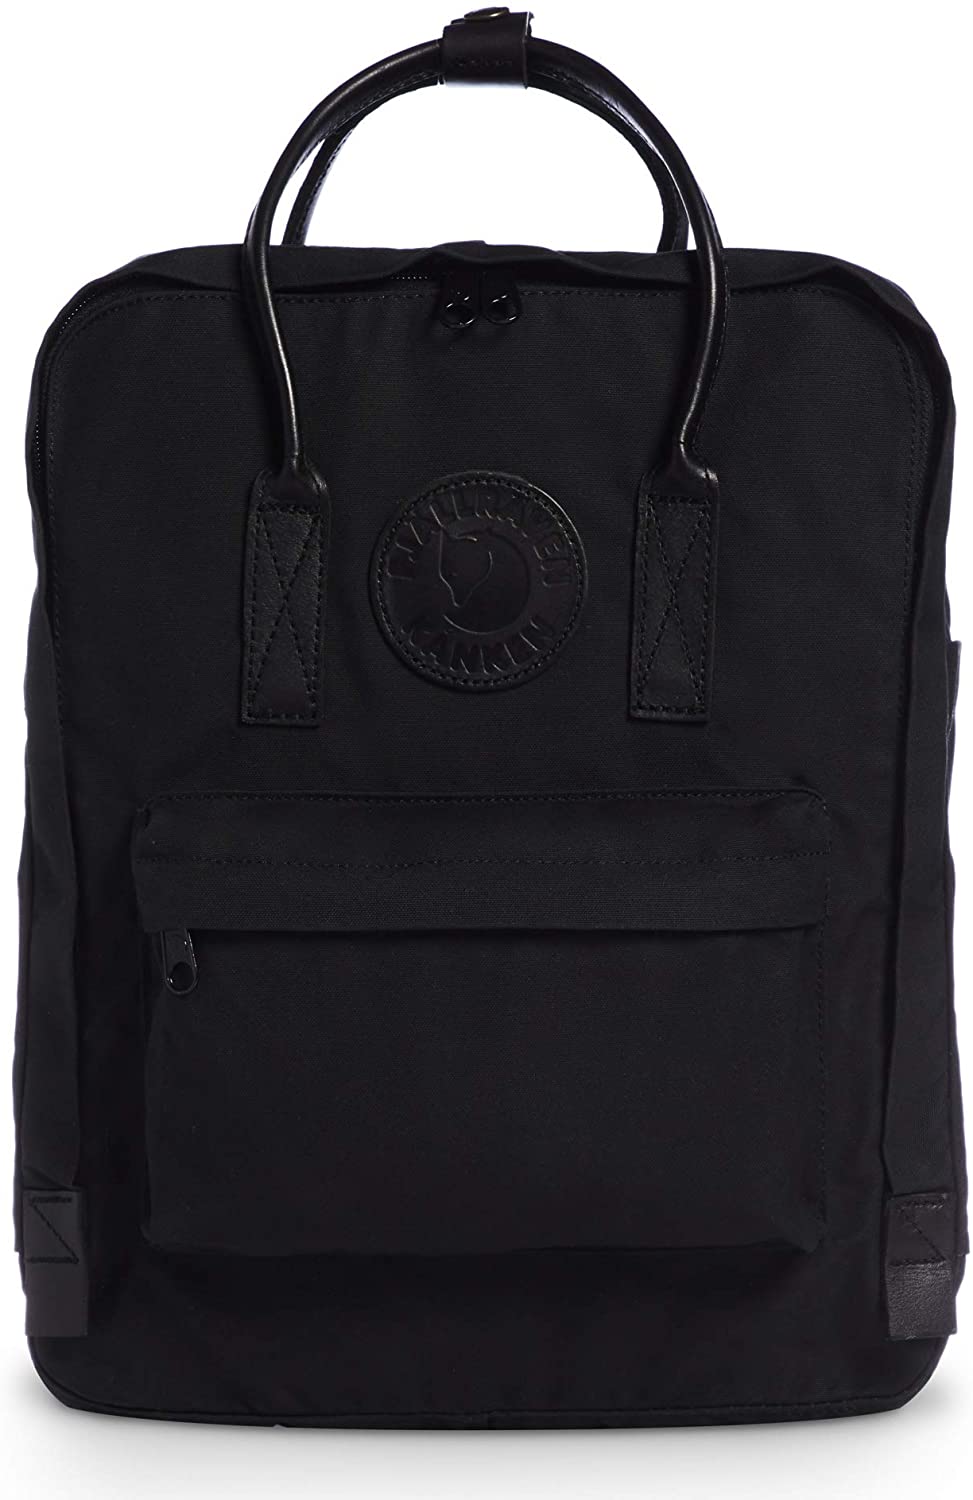 Fjallraven, Kanken No. 2 Backpack for Everyday, Black Edition